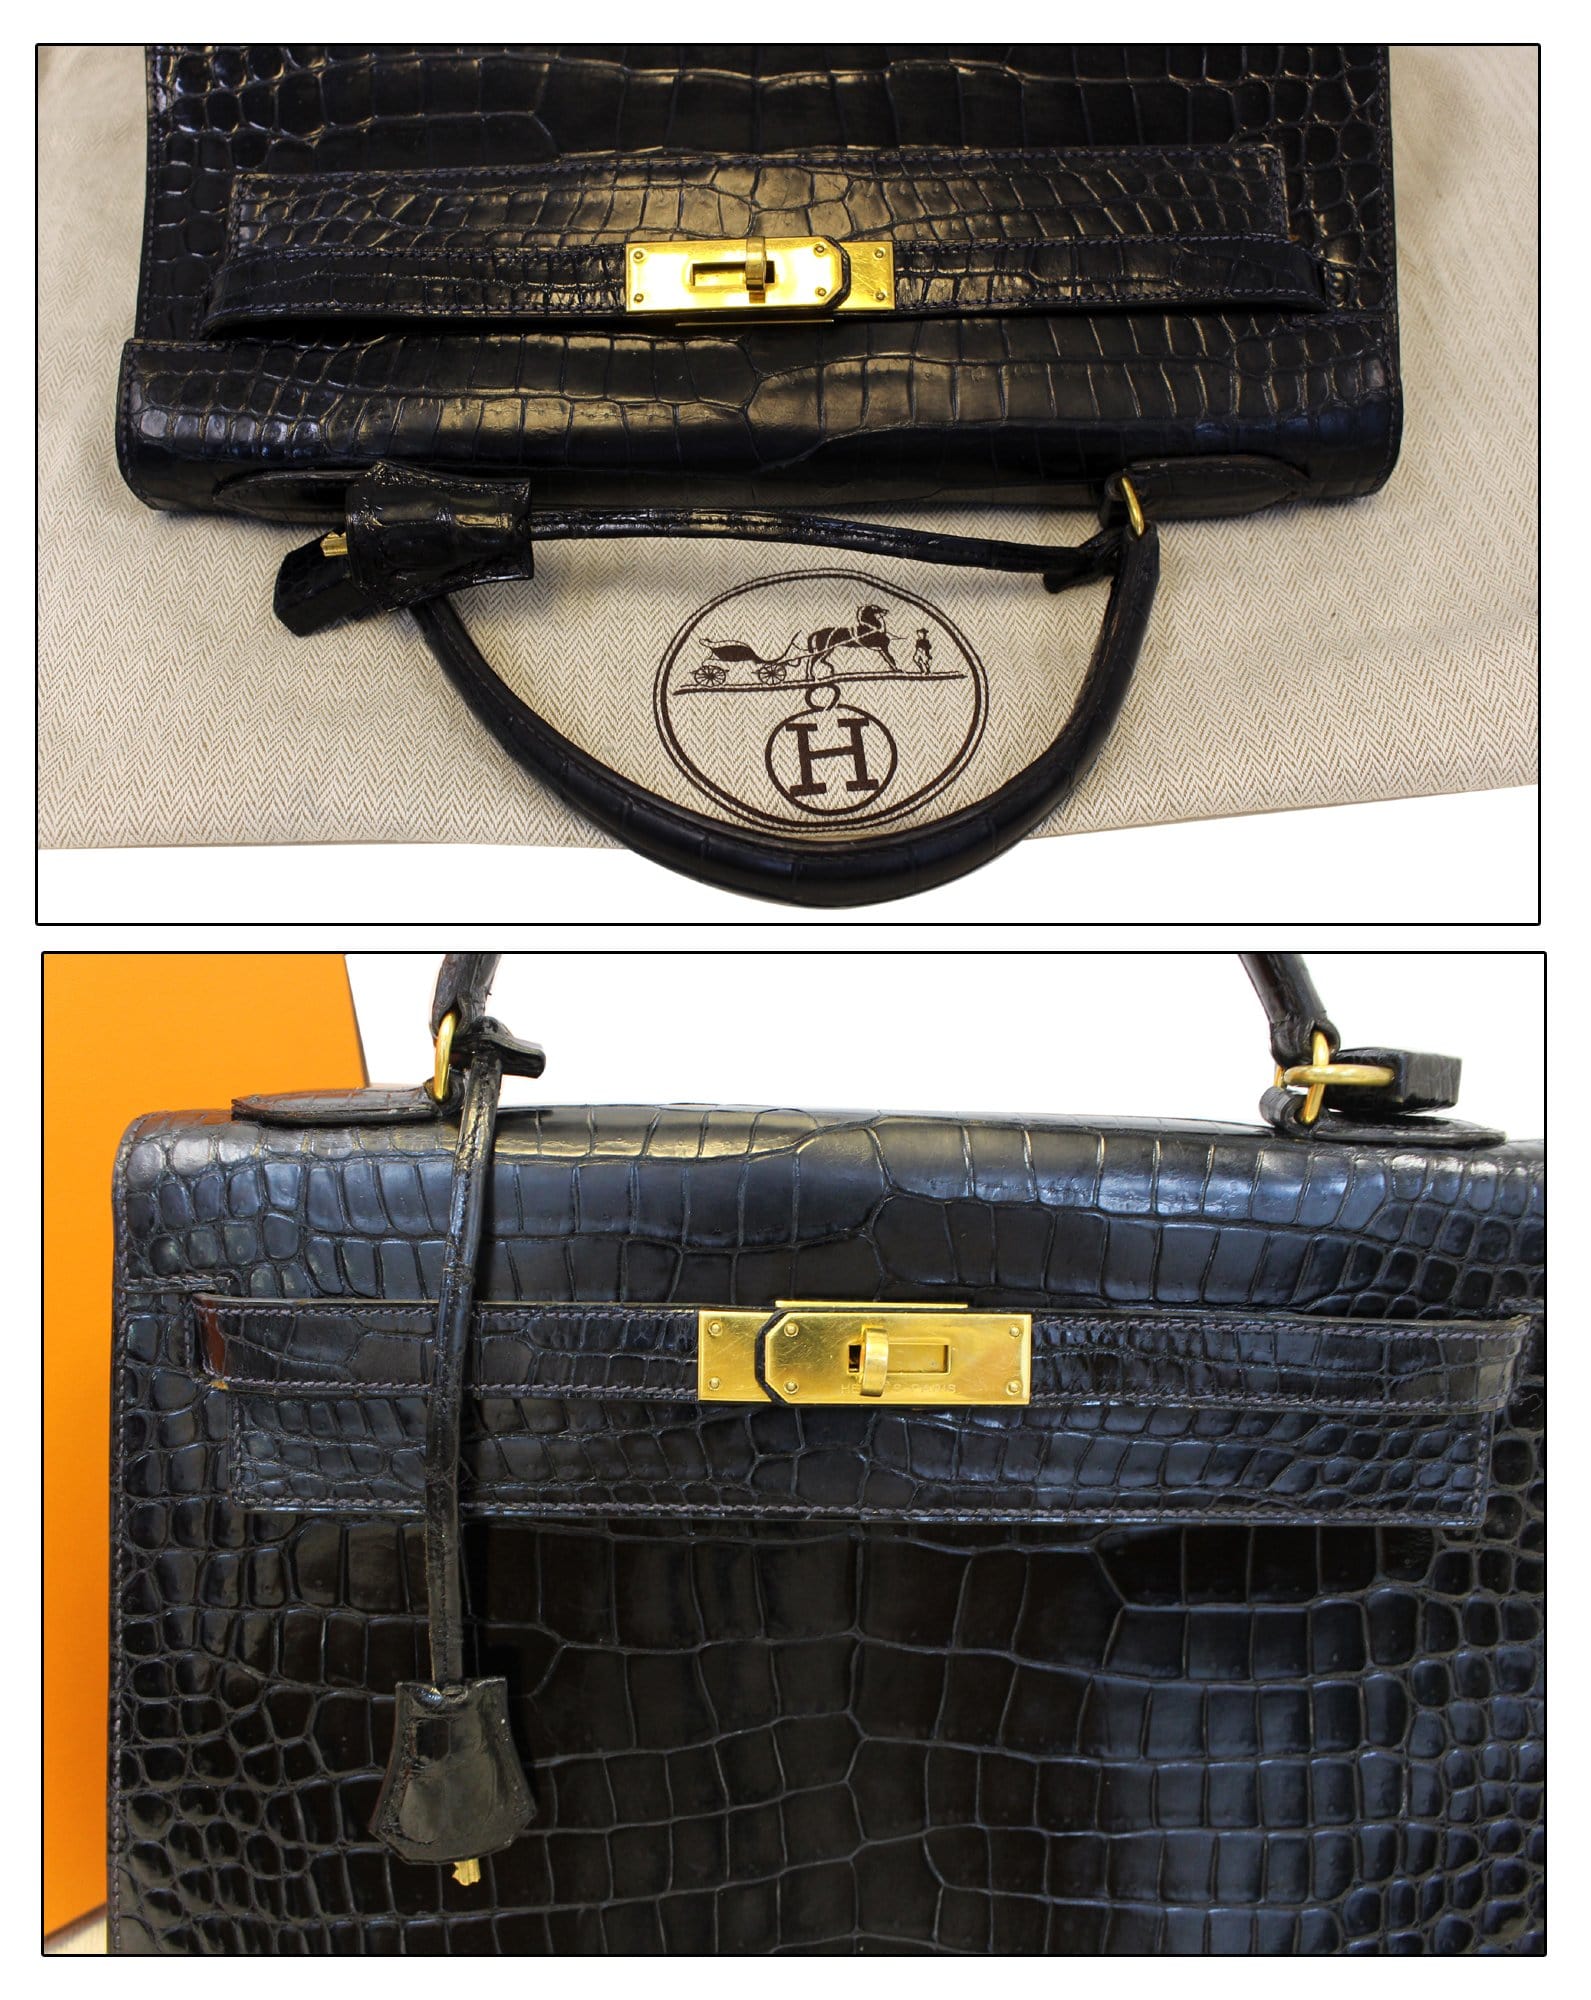 Hermes Vintage Kelly bag ficelle alligator